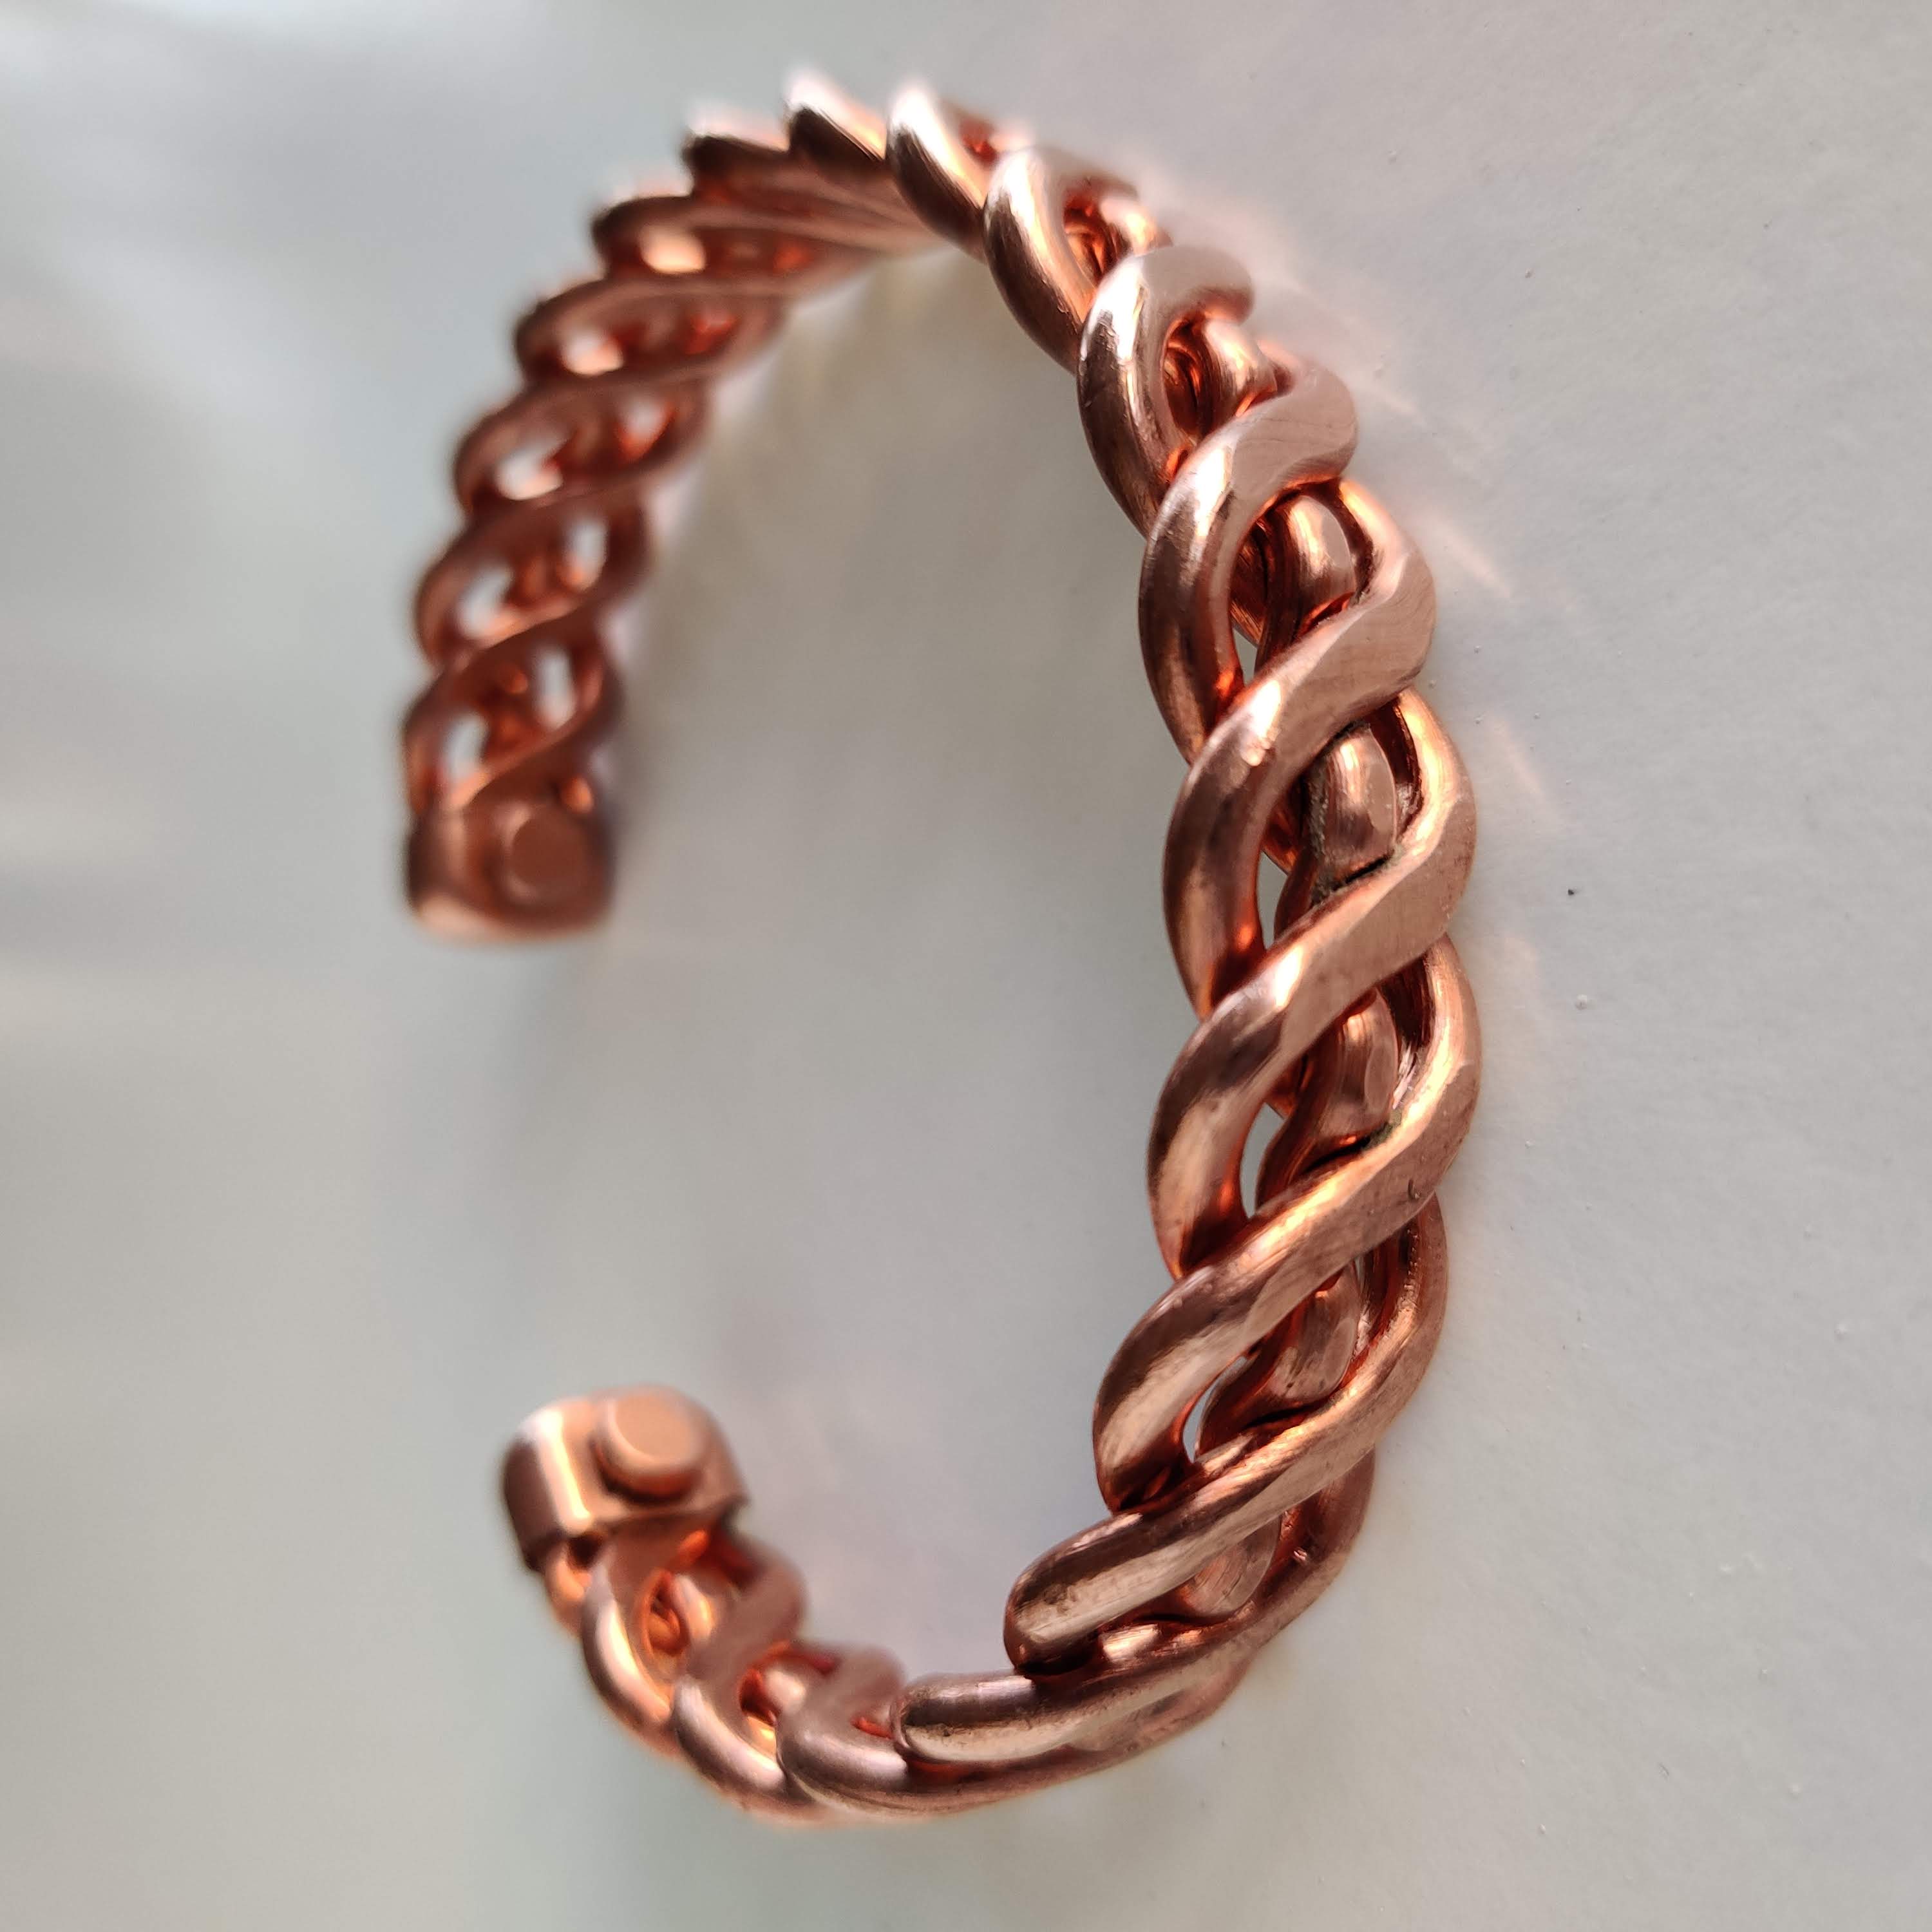 Pure Woven Copper Magnetic Bracelet - Rivendell Shop